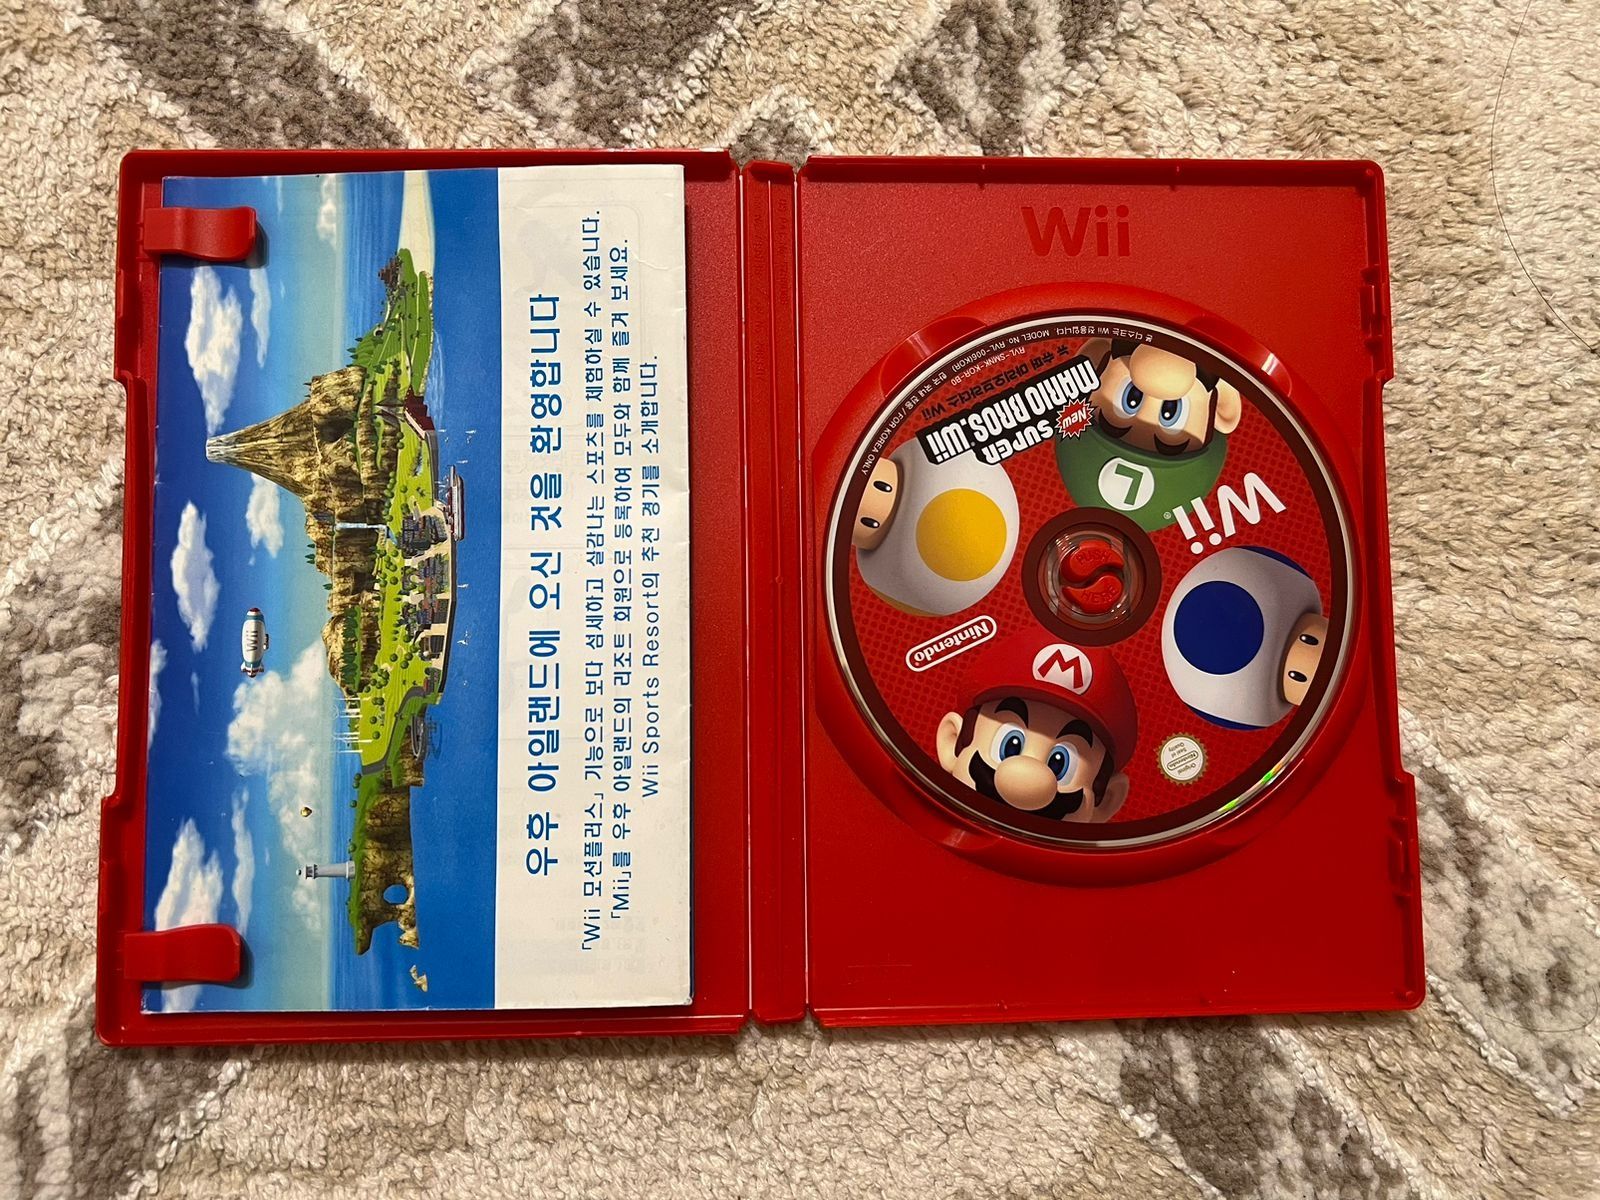 Продам игровую консоль Это Nintendo Wii RVL-001